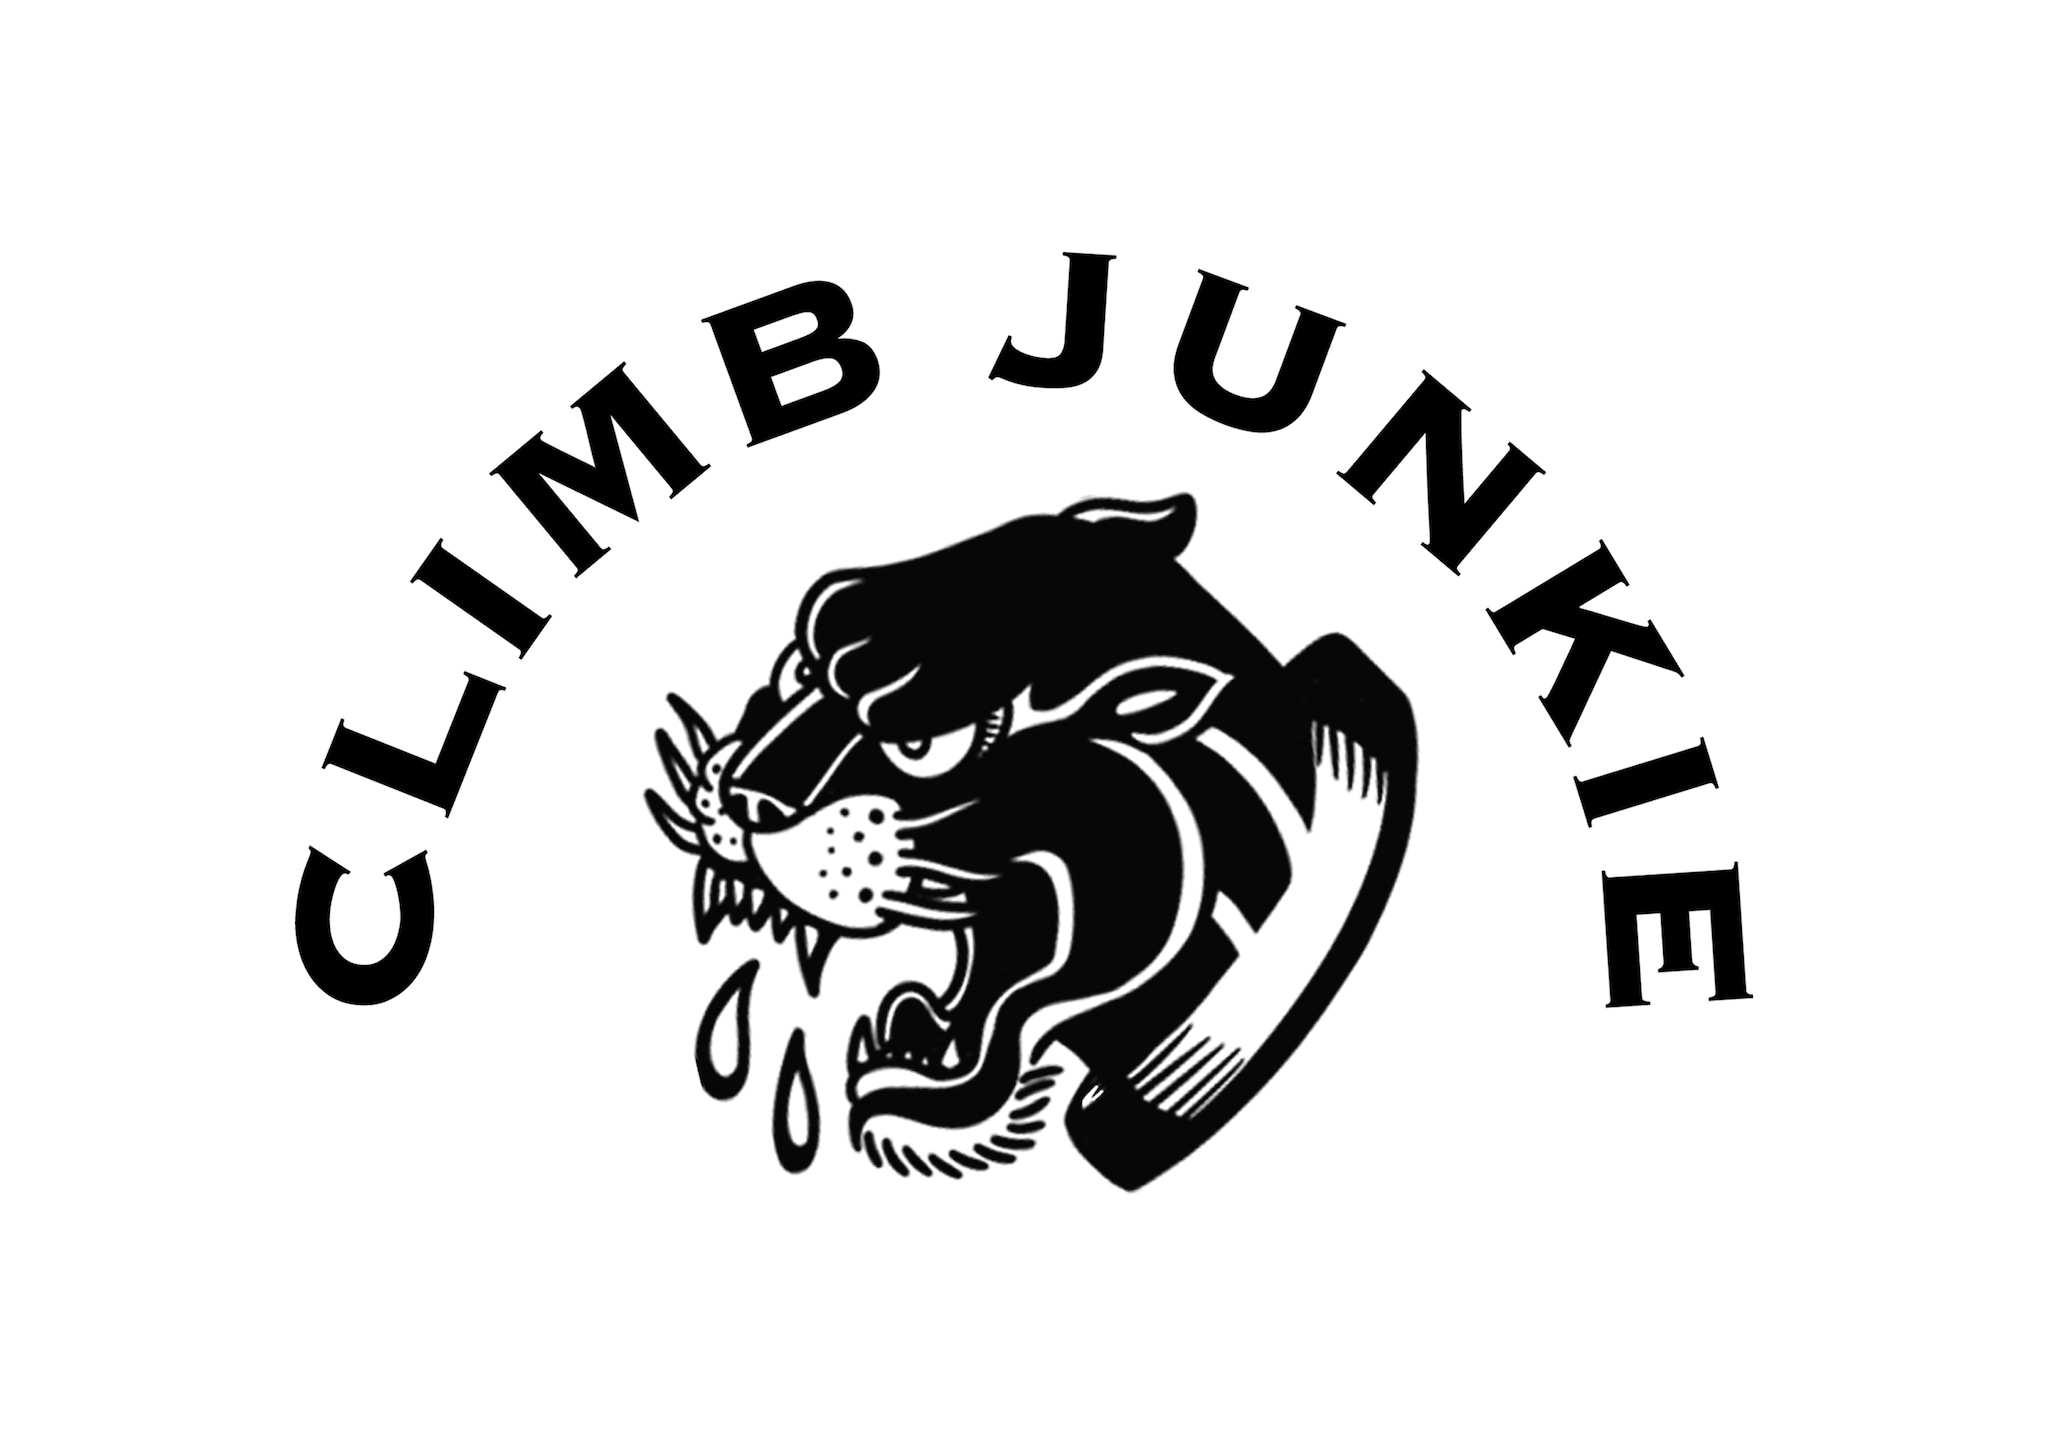 CLIMB JUNKIE